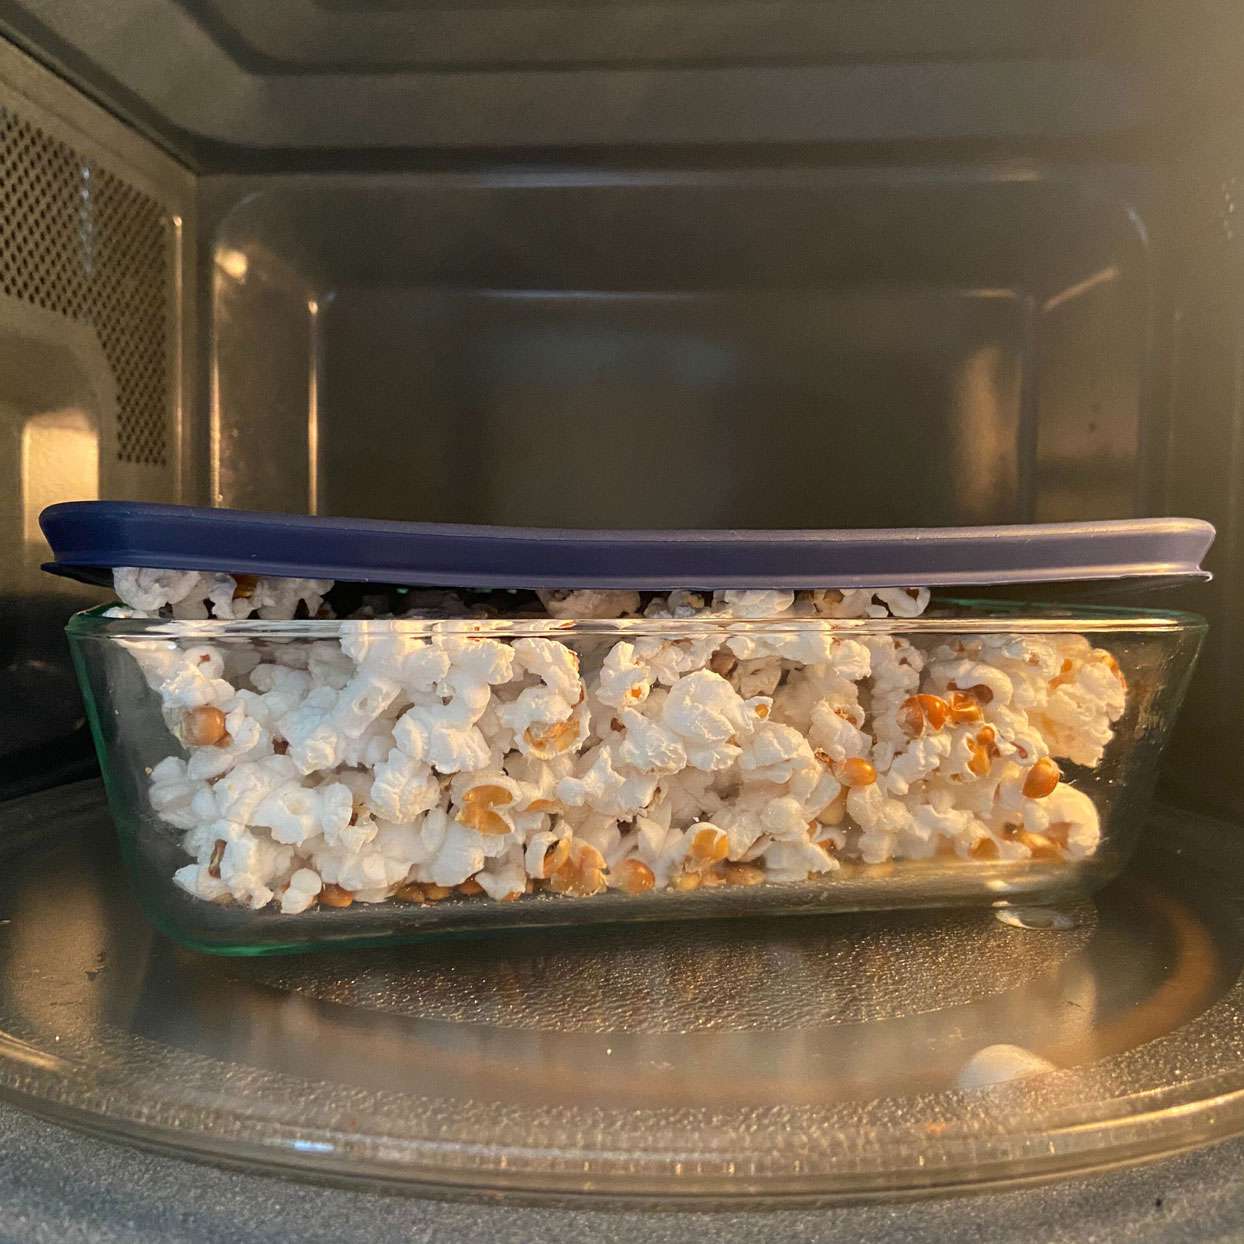 popcorn in microwave